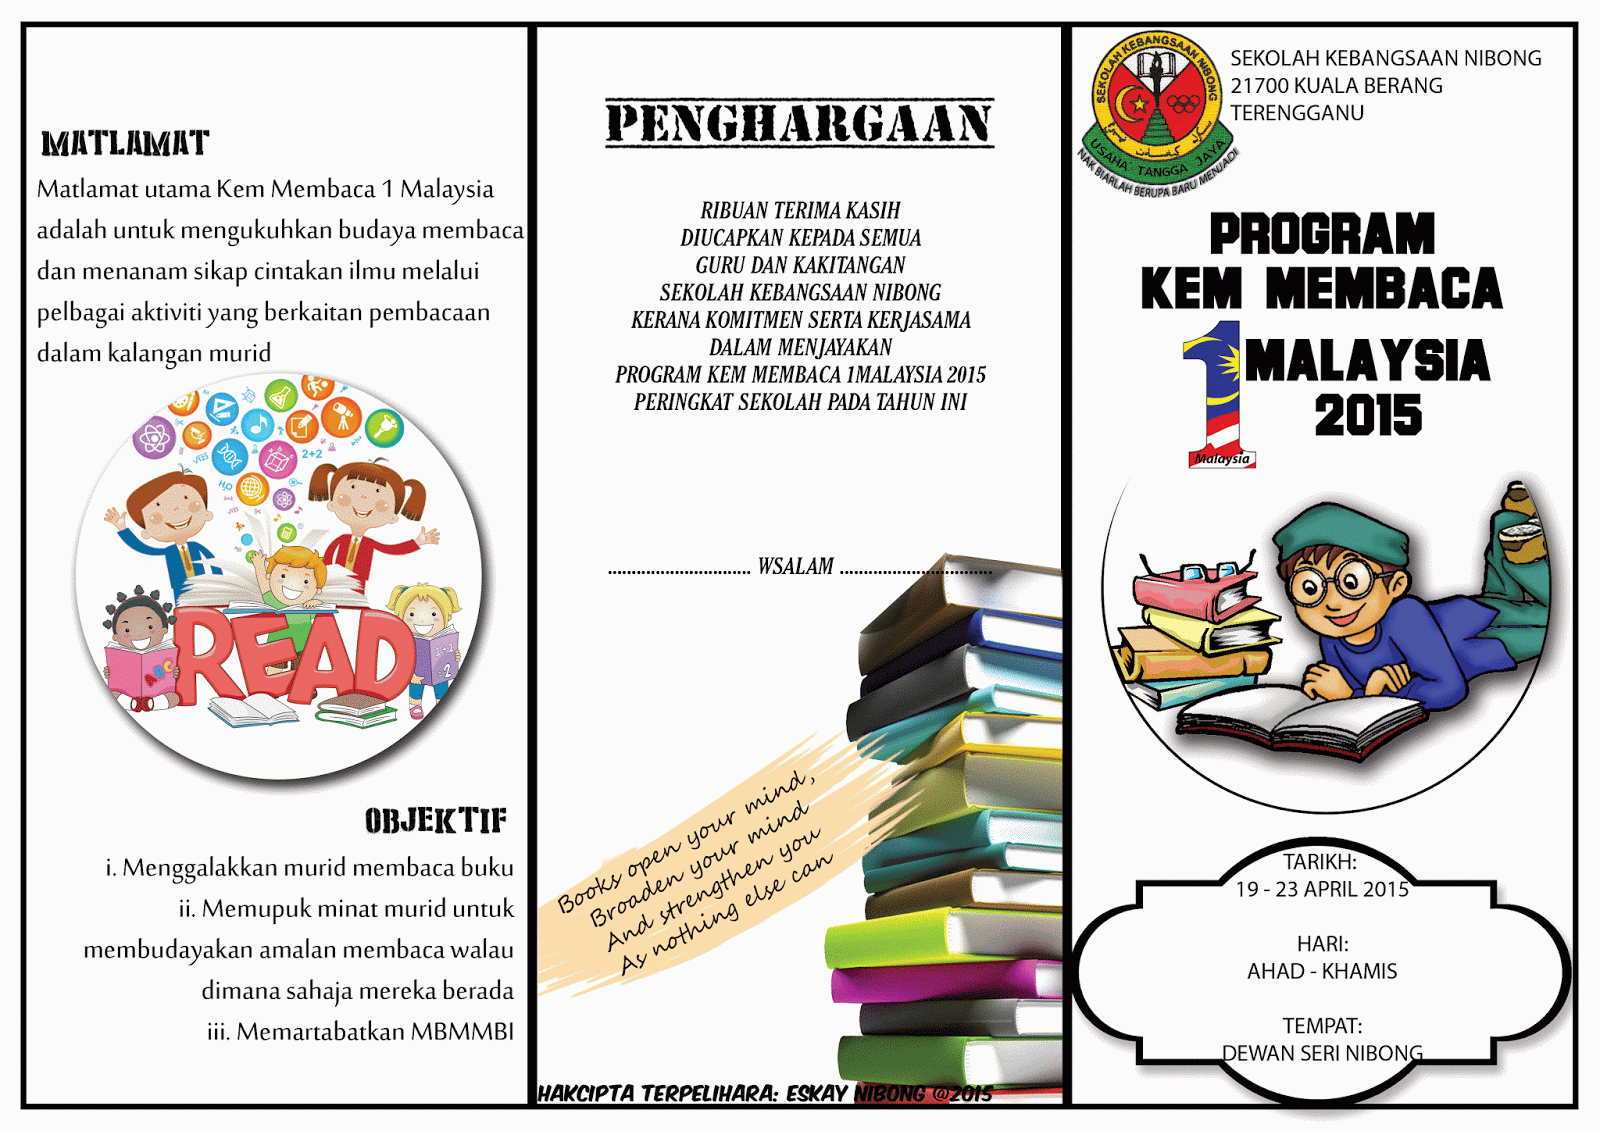 Program Kem Membaca 1Malaysia